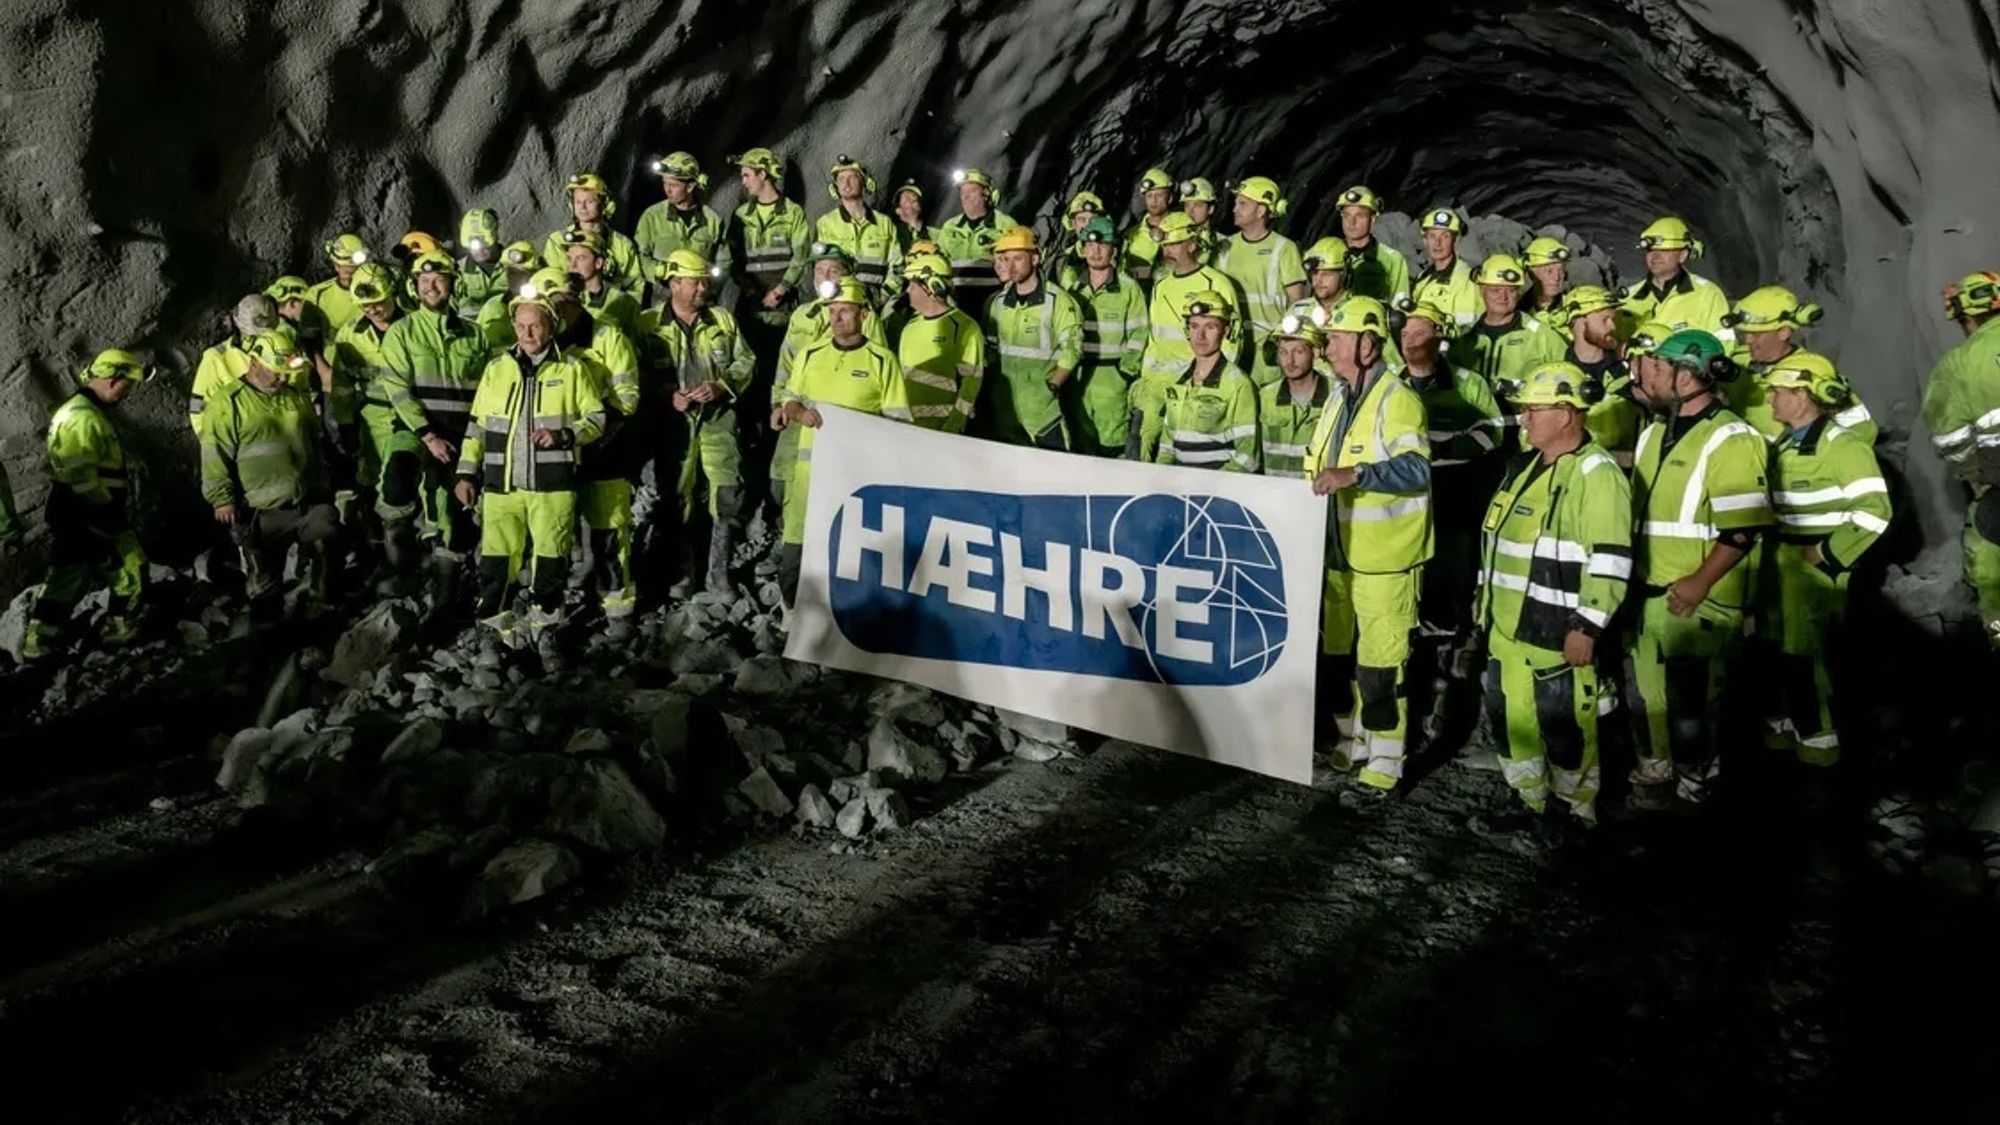 Hæhre har overtatt teten som Norges største tunnel-entreprenør